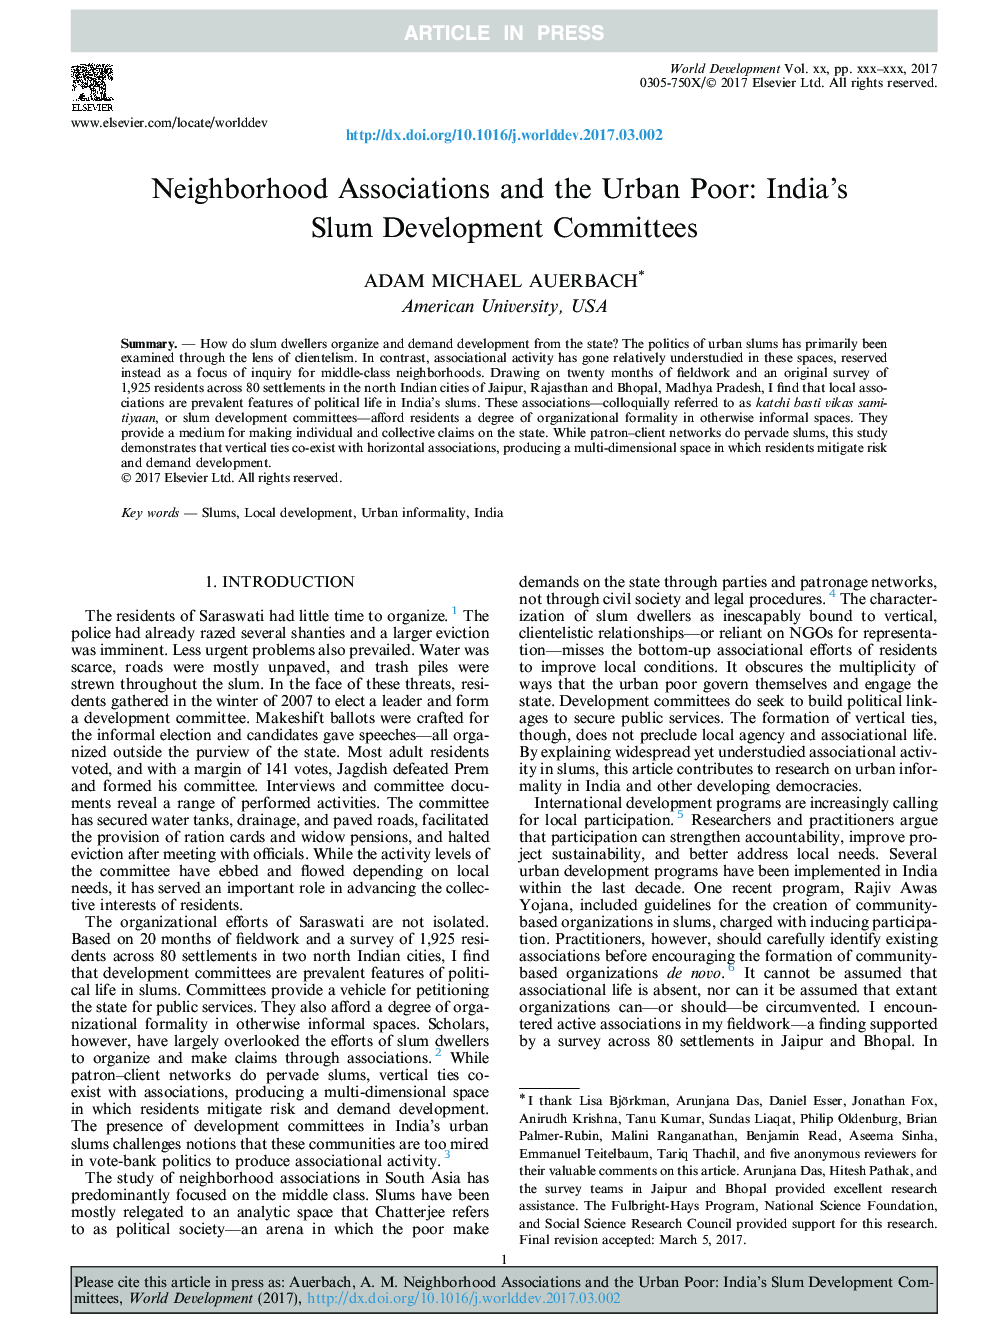 انجمن های همسایگی و فقر شهری: کمیته های توسعه زراعت هند 